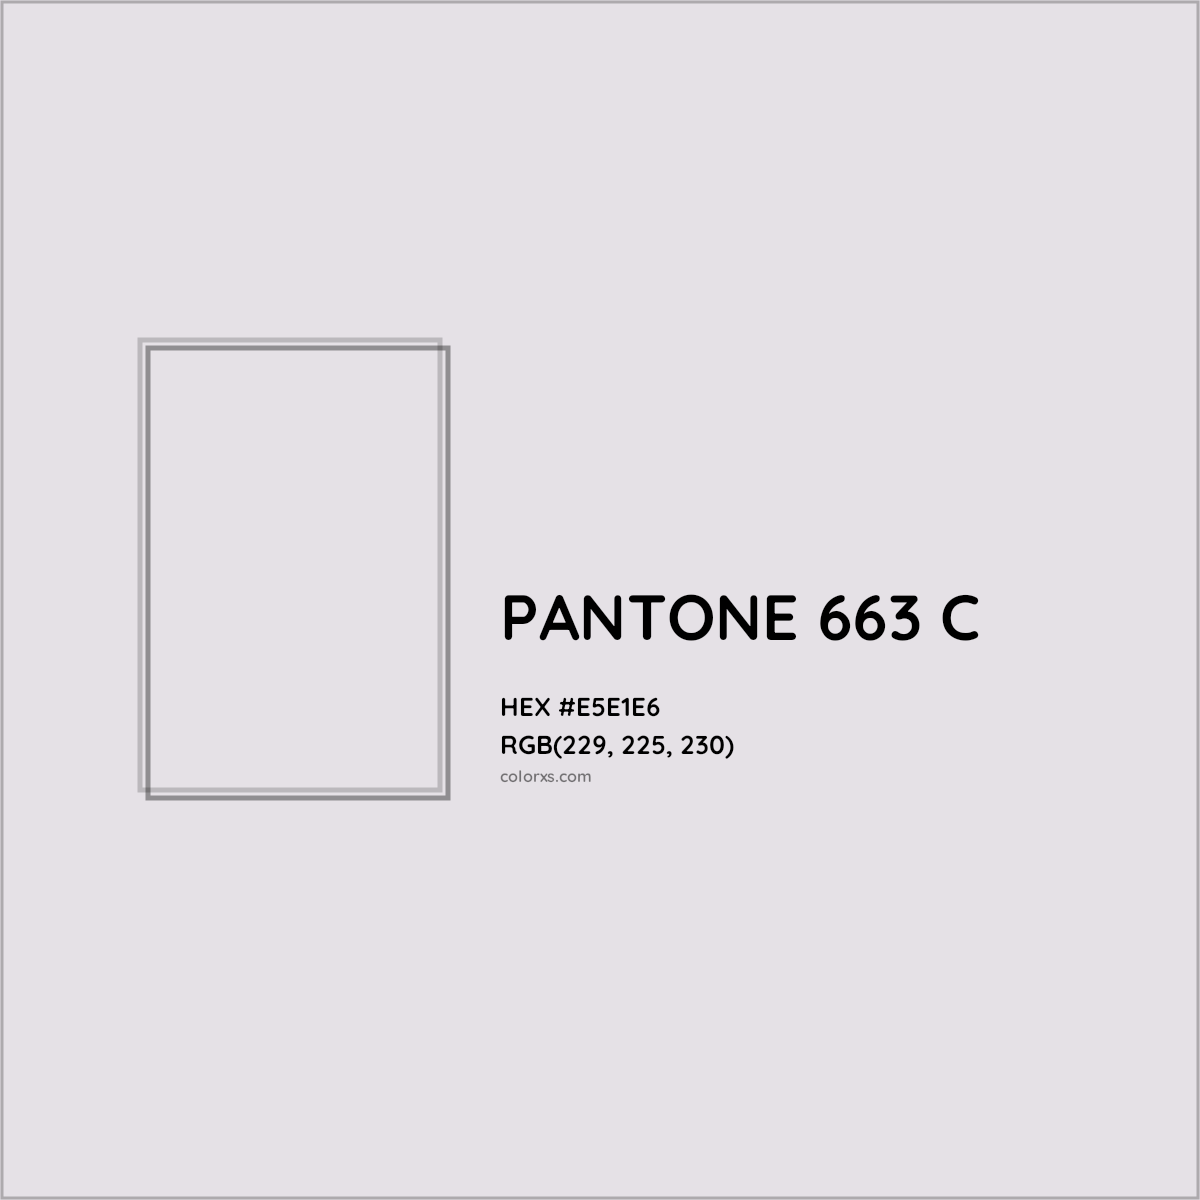 HEX #E5E1E6 PANTONE 663 C CMS Pantone PMS - Color Code